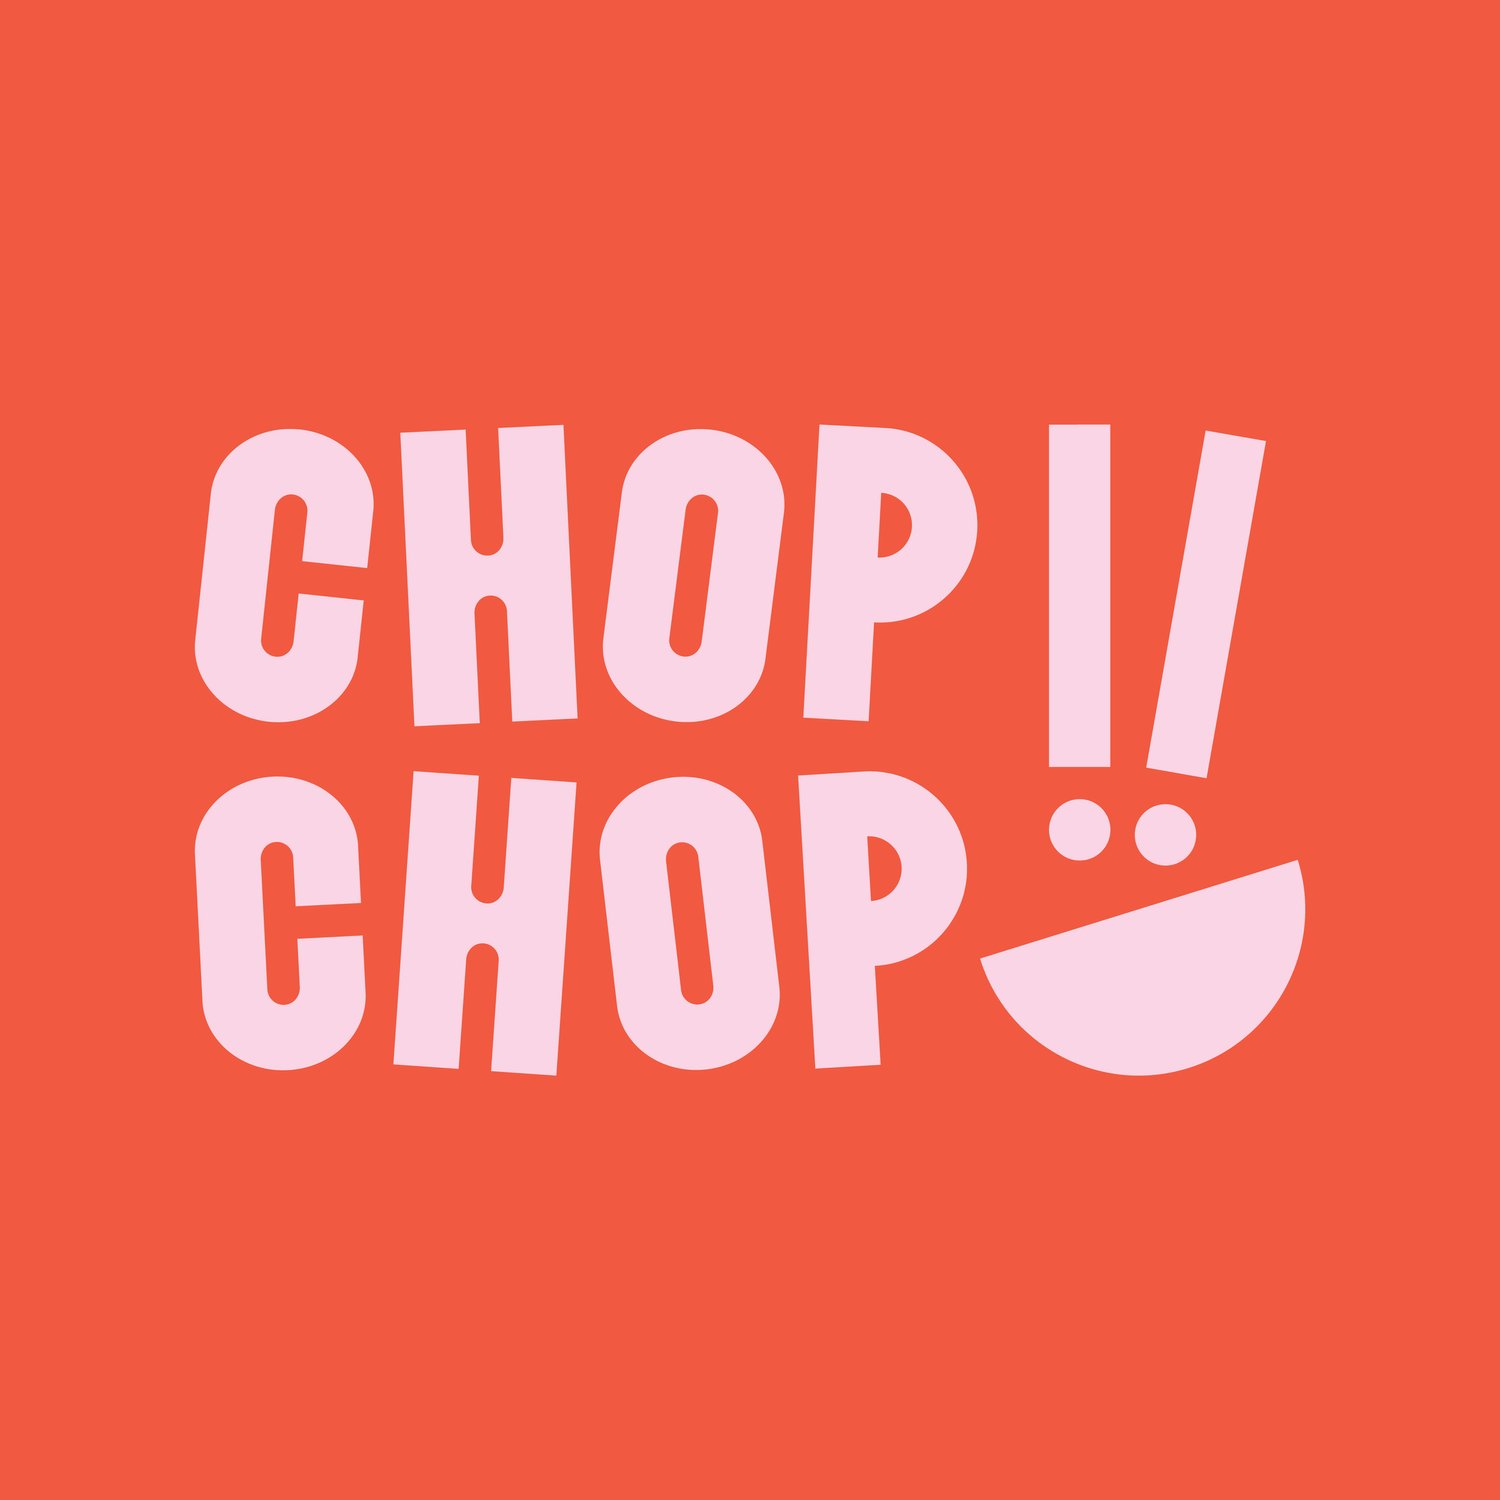 Chop Chop 